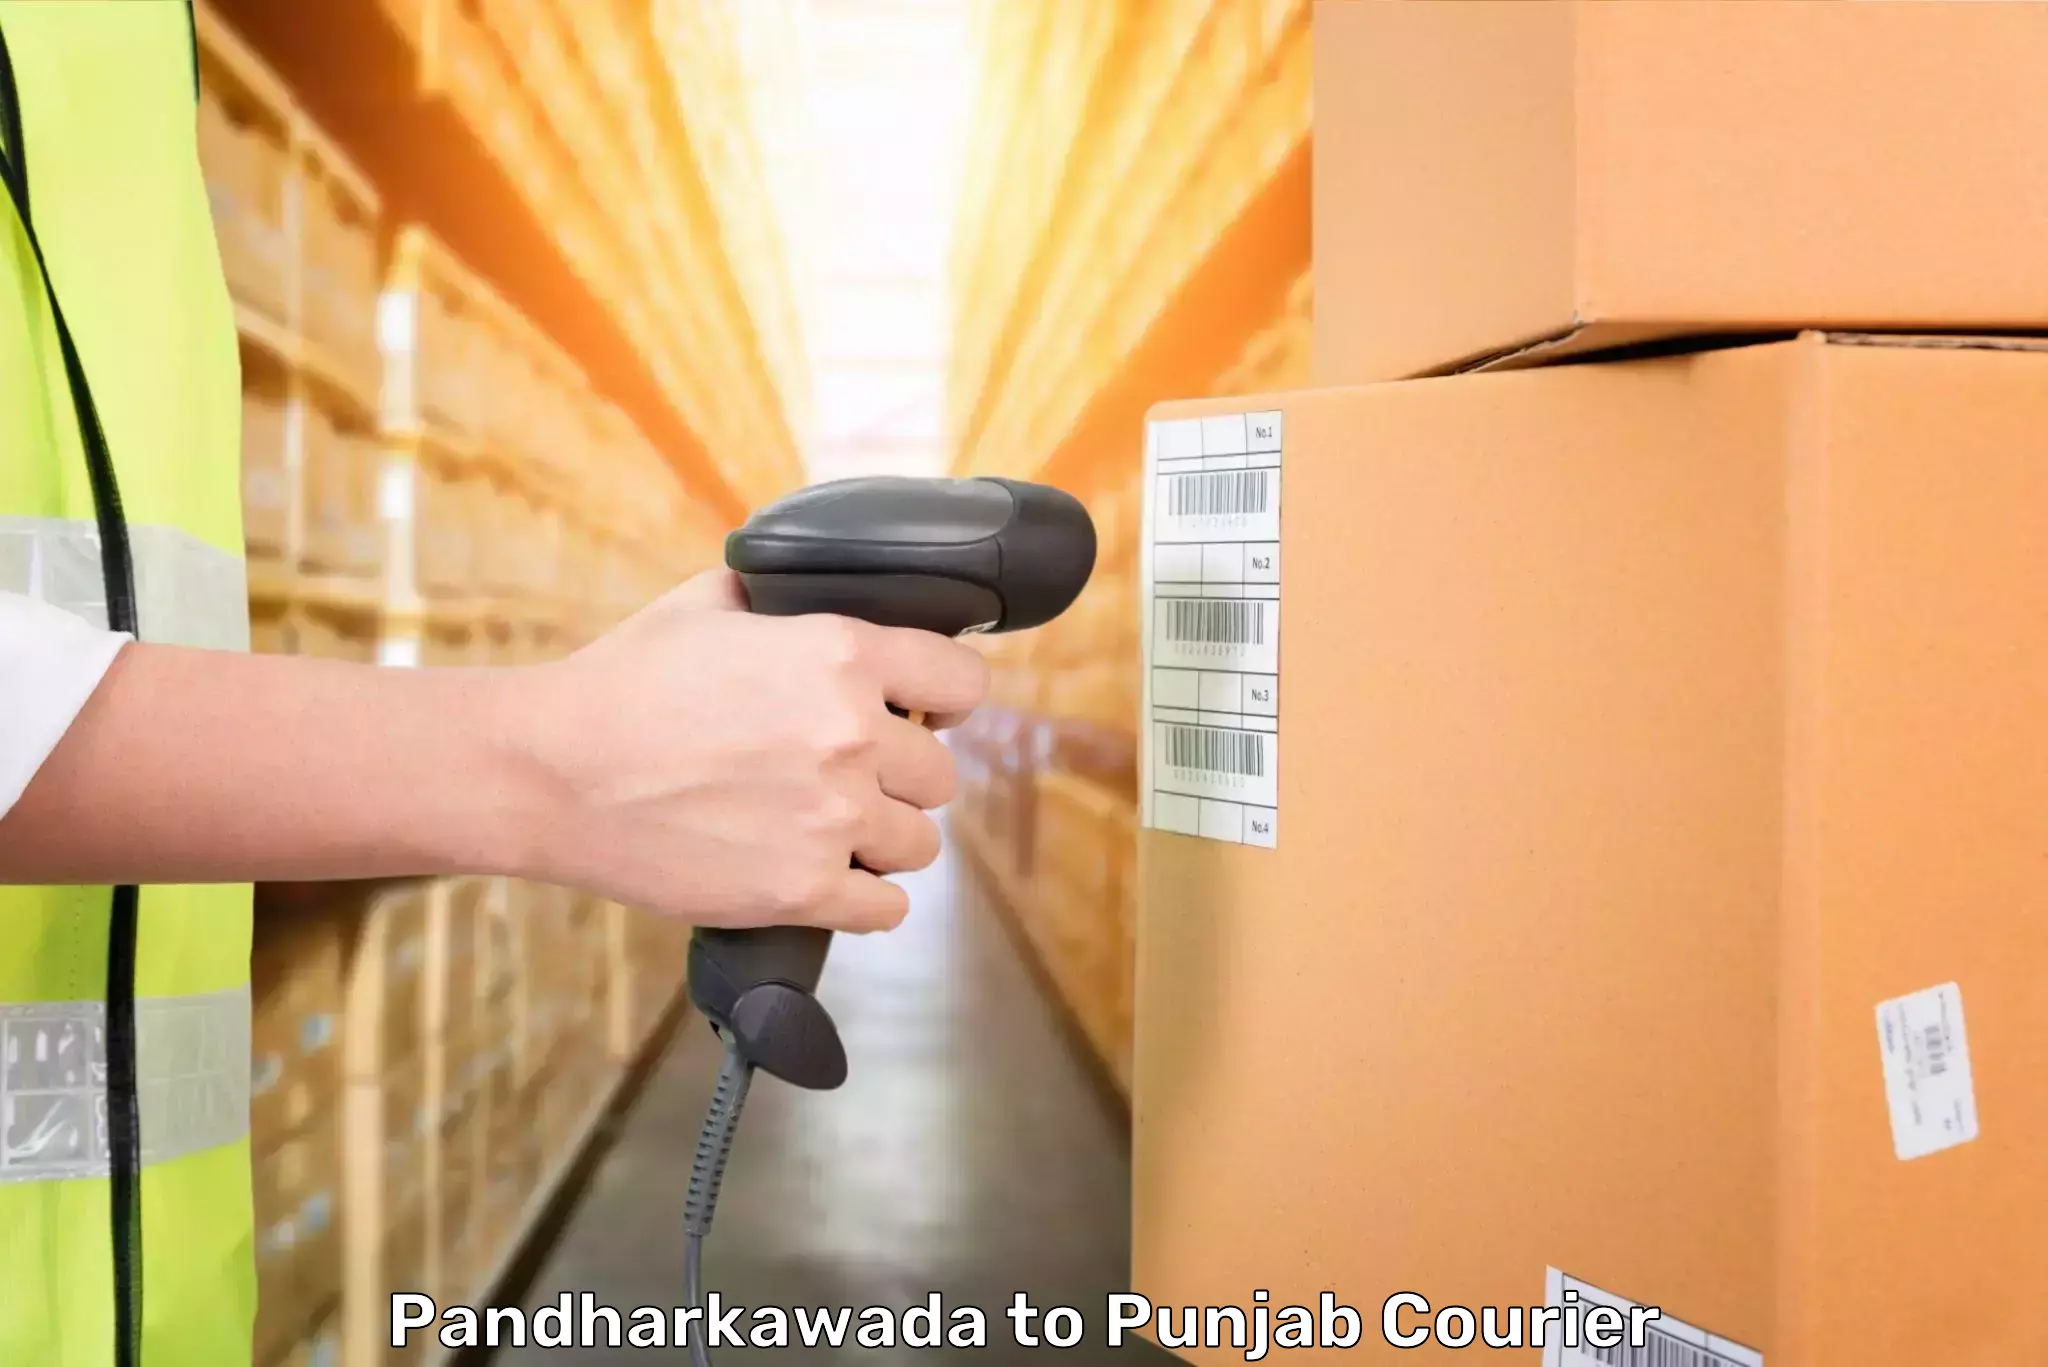 Luggage transport solutions in Pandharkawada to Punjab